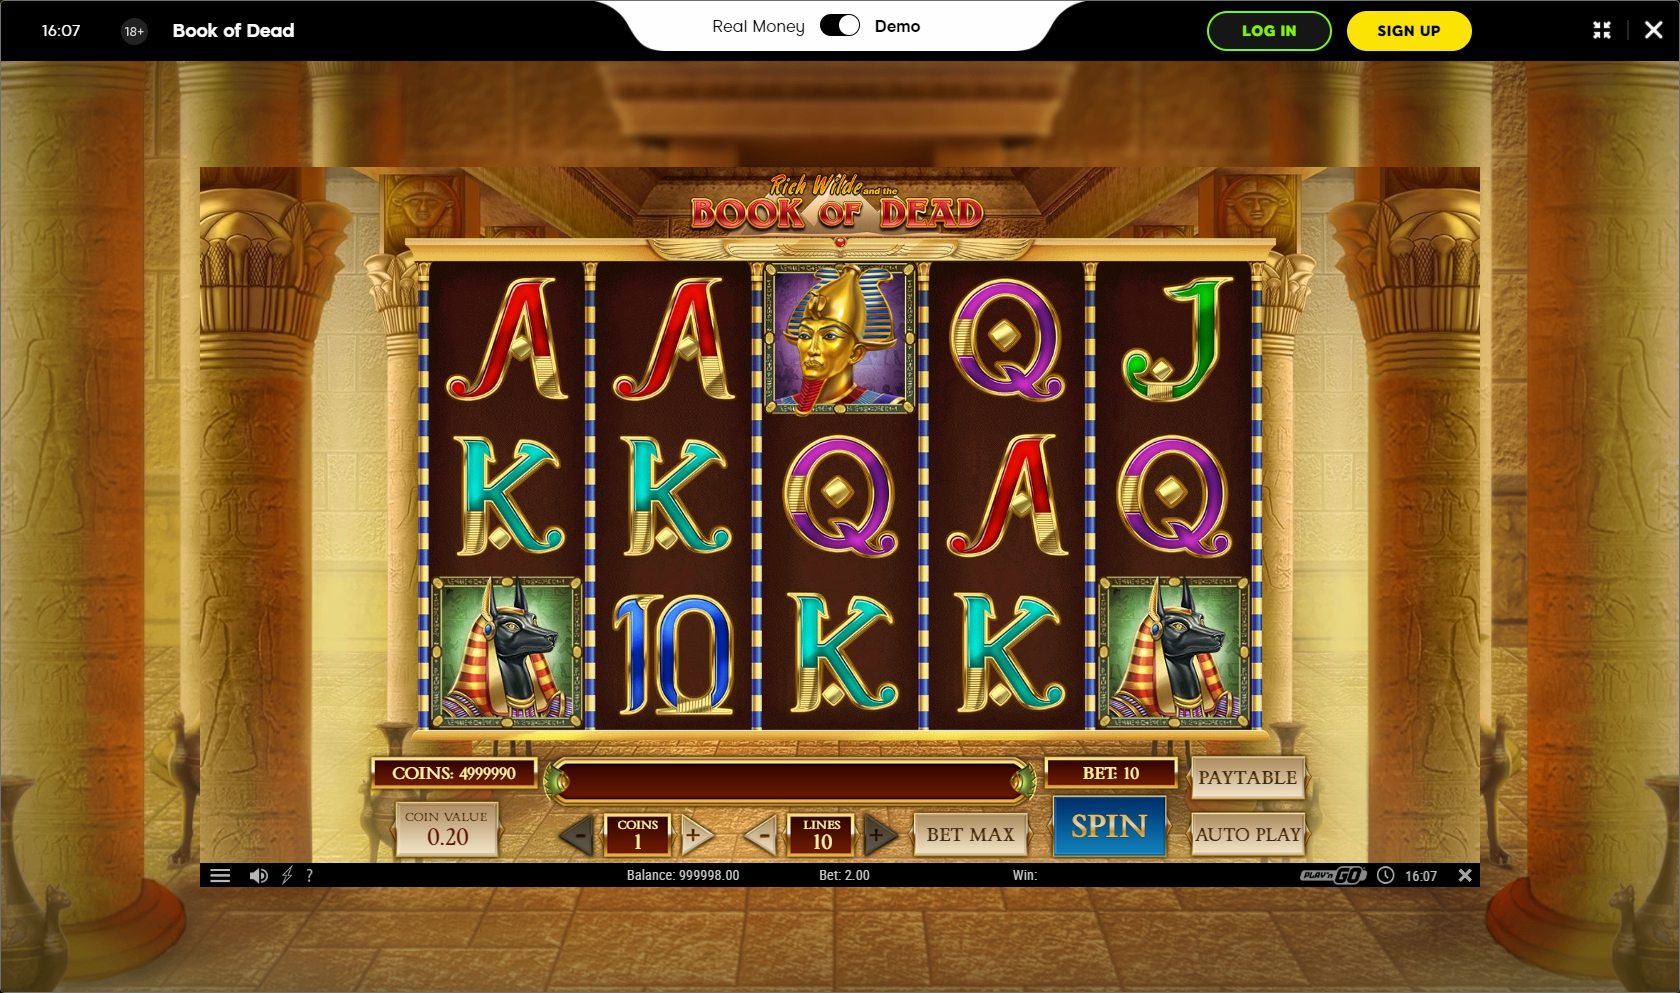 888.com Casino Slot Games